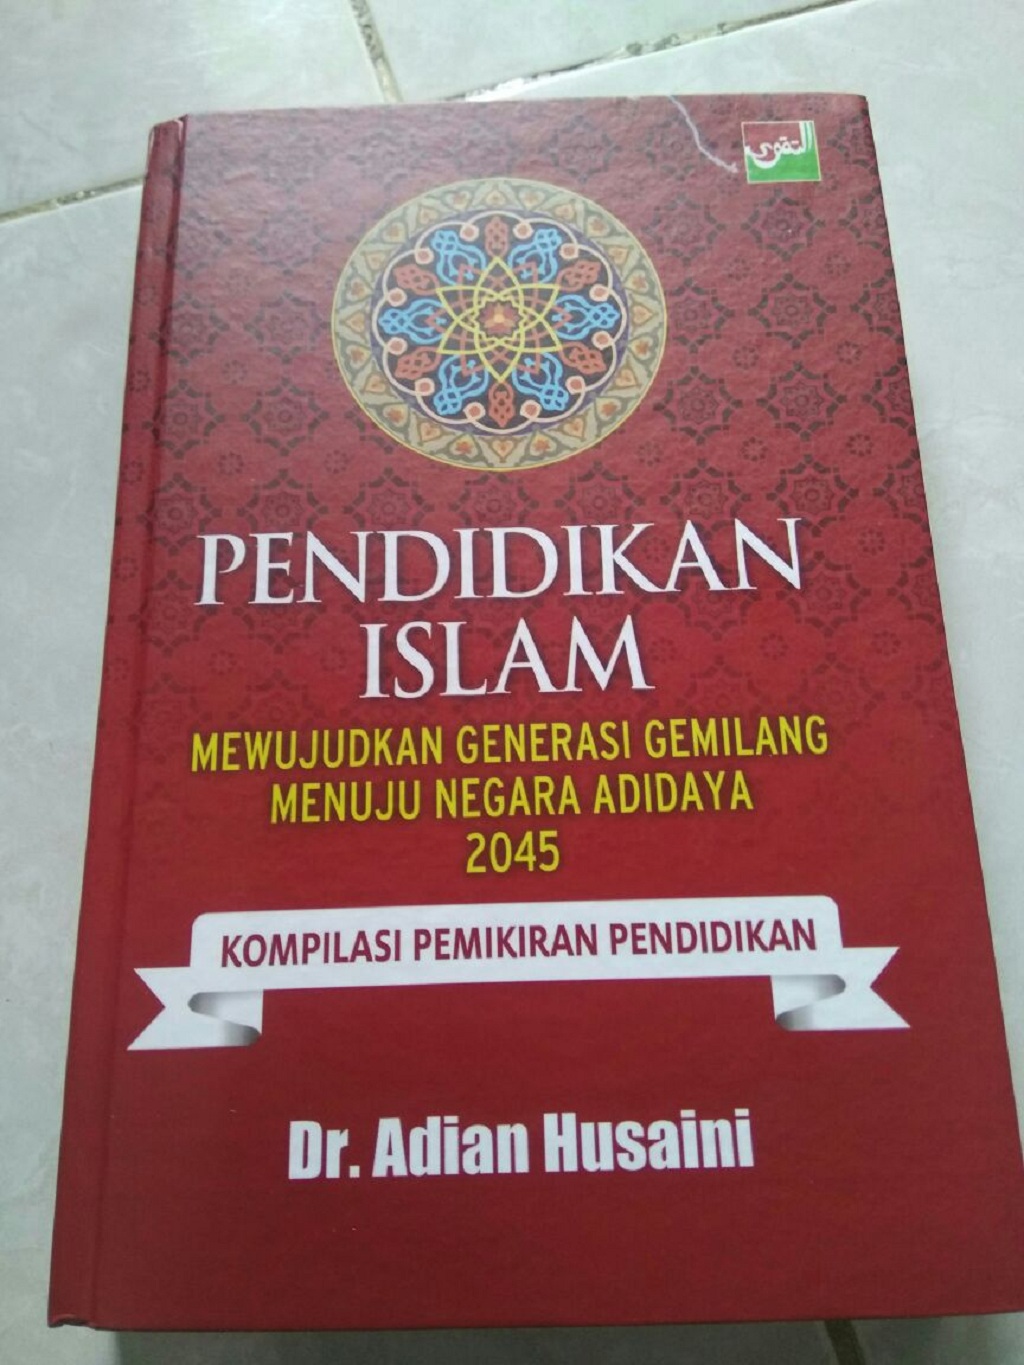 Dr Adian Husaini Luncurkan Buku Tentang Pendidikan Islam – Warta Pilihan